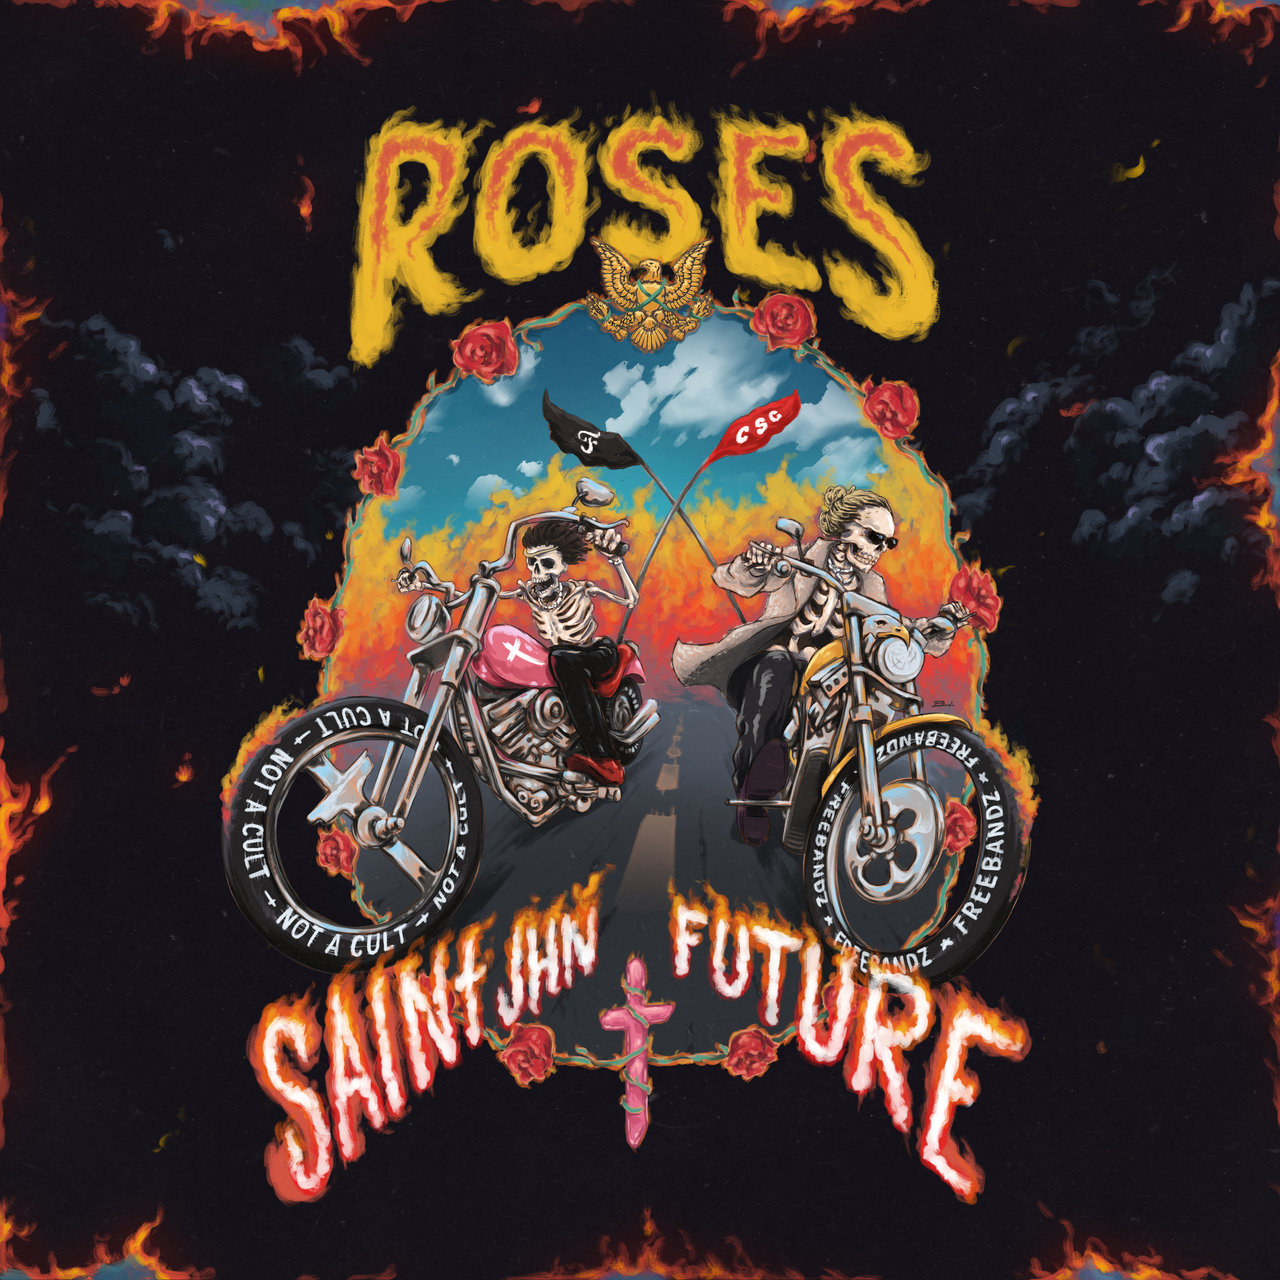 Saint Jhn - Roses (Remix) (ft. Future) (Cover)